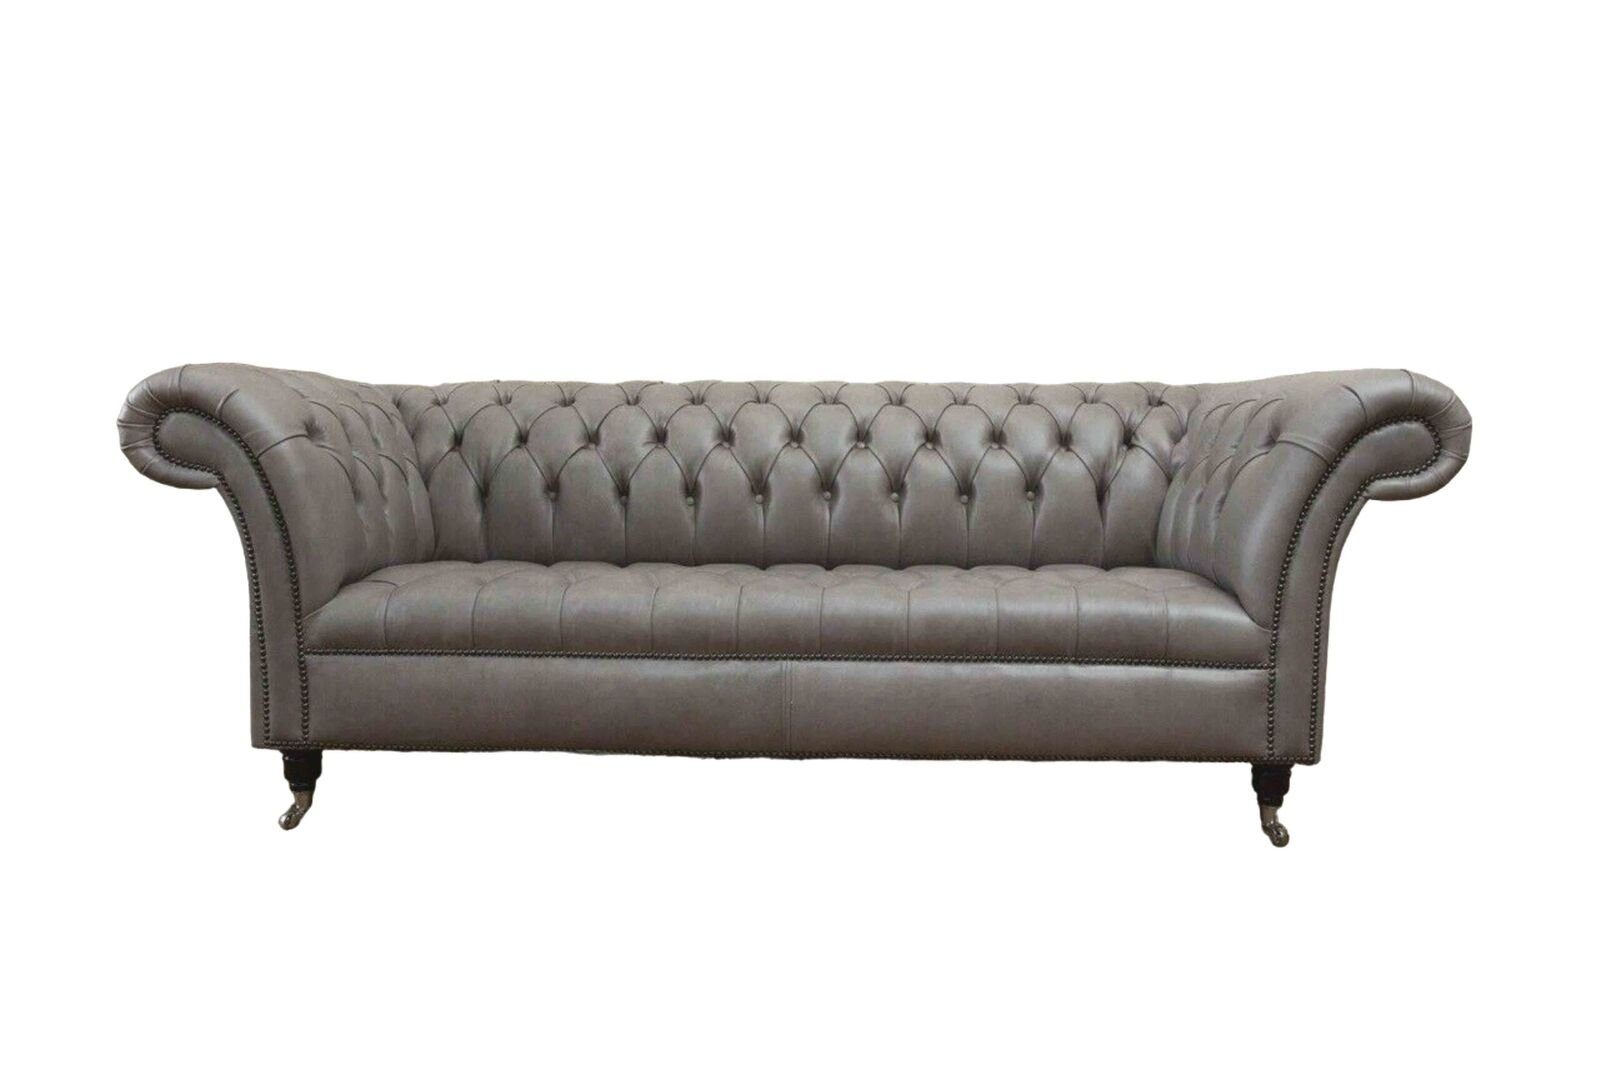 JVmoebel Sofa Graue Chesterfield englisch klassischer Stil Sofa Couch 3 Sitz Polster, Made In Europe